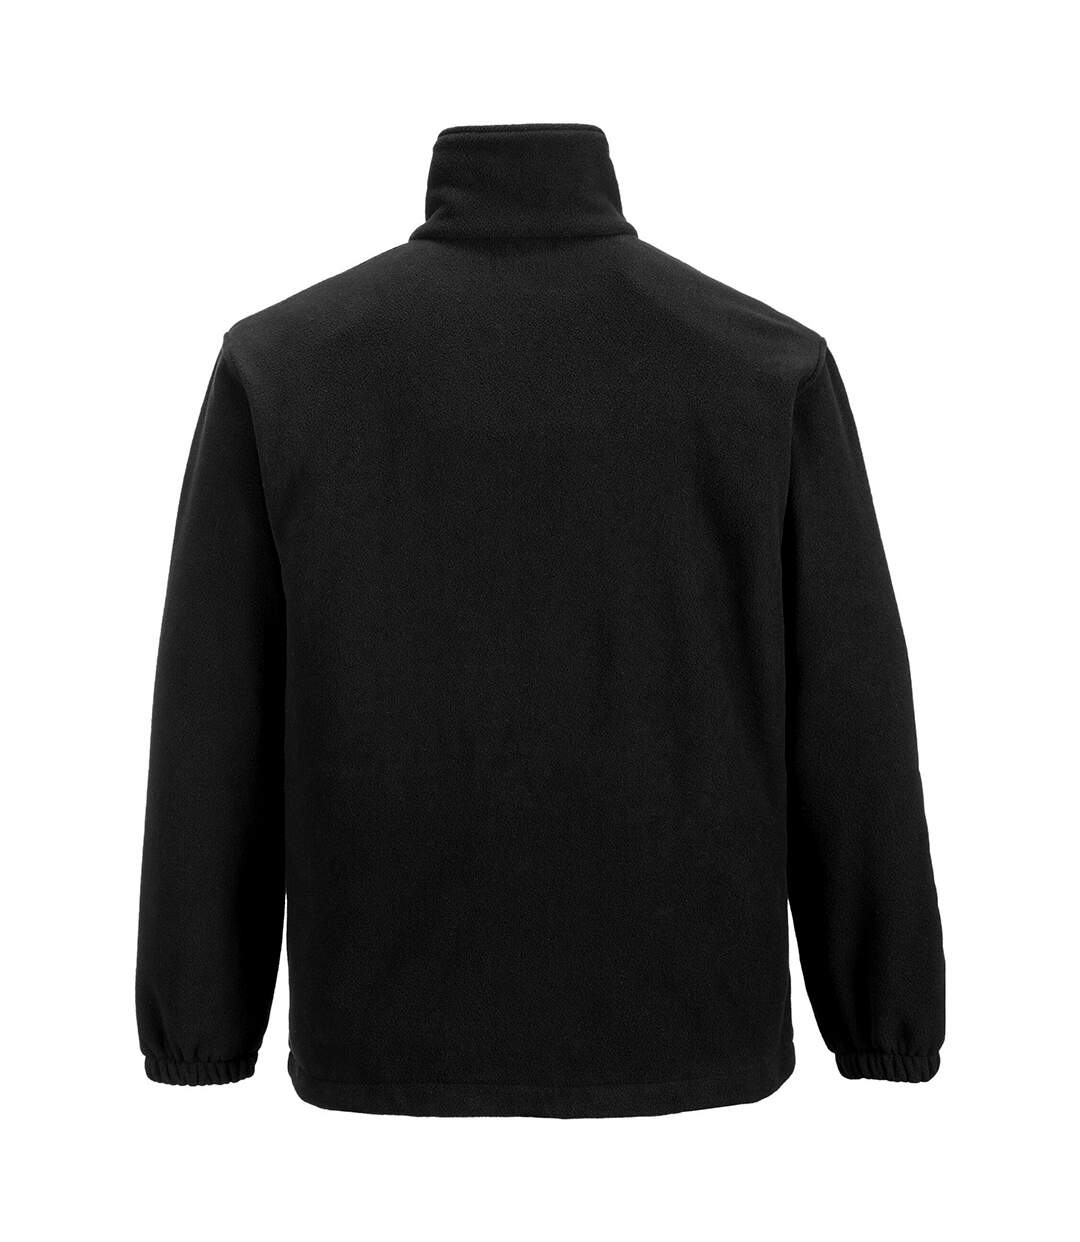 Portwest Mens Aran Full Zip Fleece Top (Black) - UTRW4363